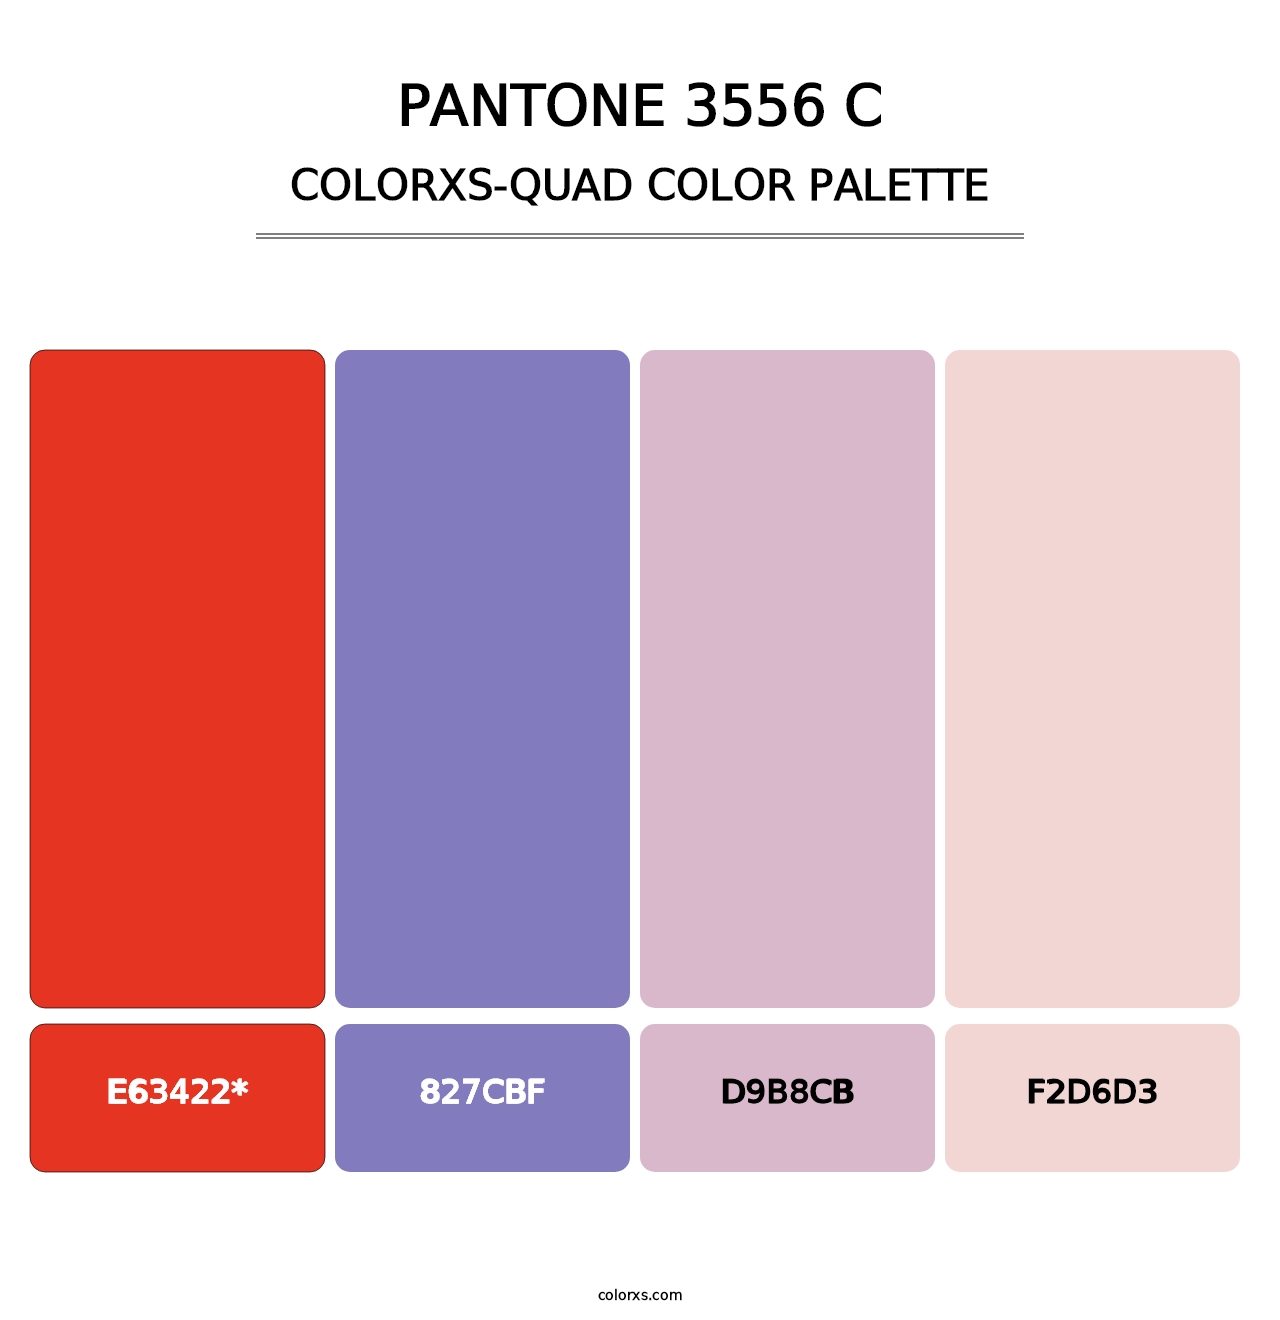 PANTONE 3556 C - Colorxs Quad Palette